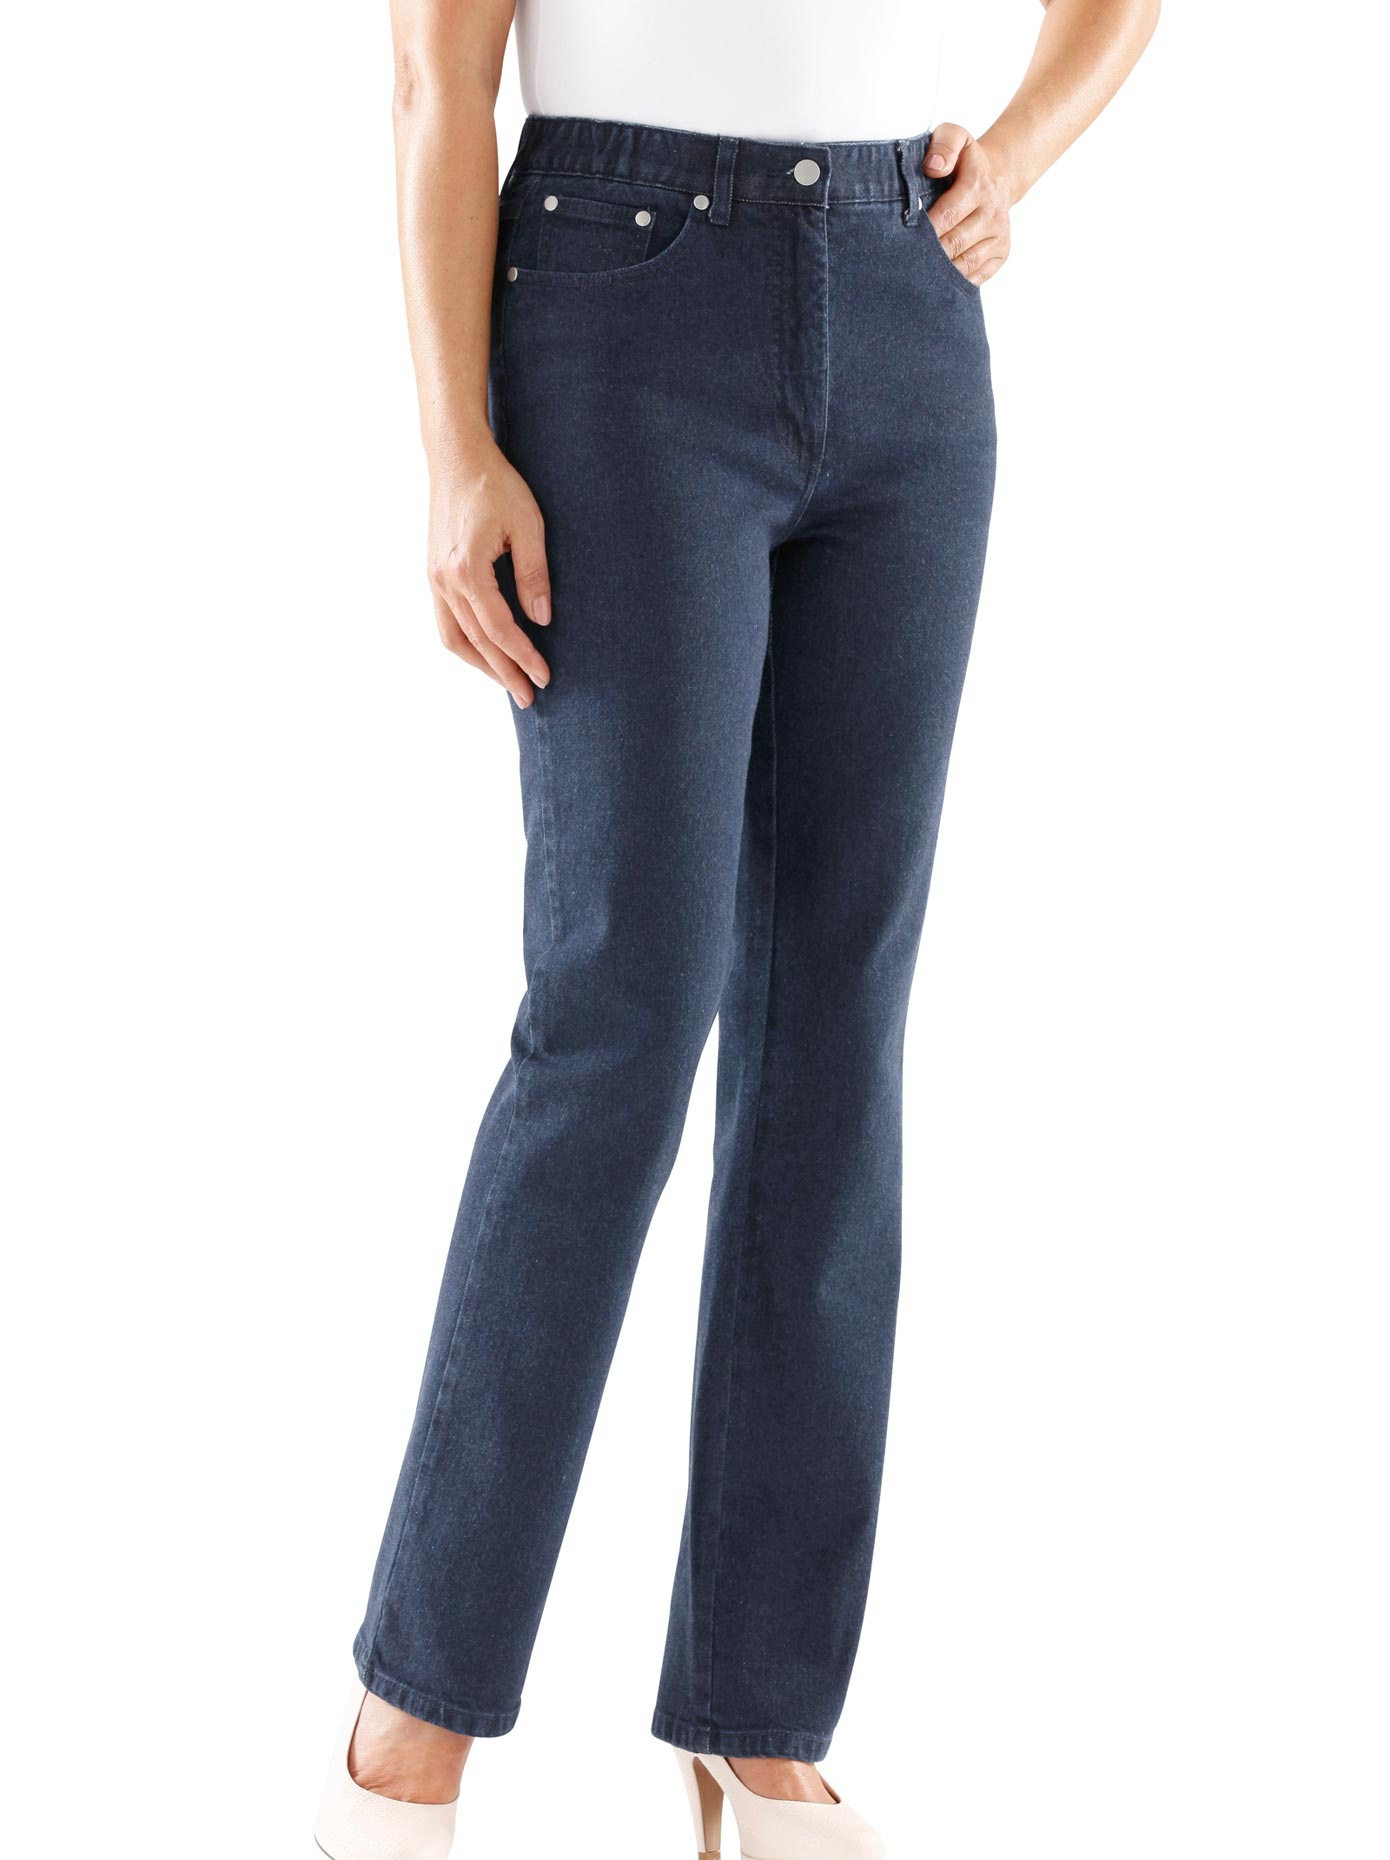 Stretch & 5-Pocket - gleich für Damen ordern! Jeans